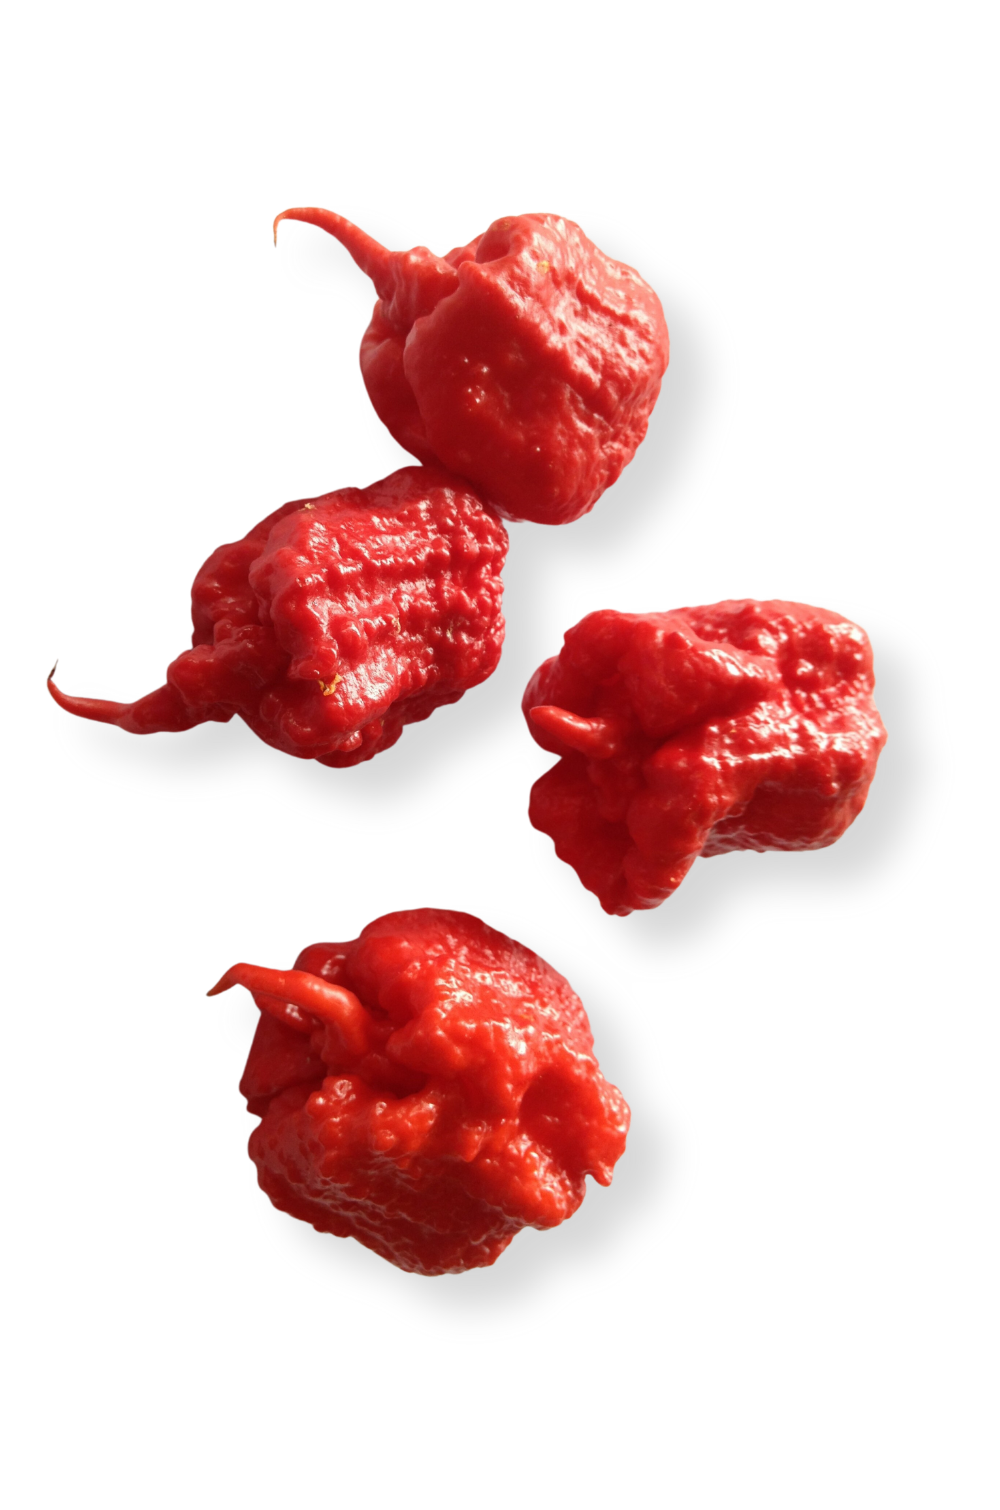 PC Carolina Reaper Hot Peppers